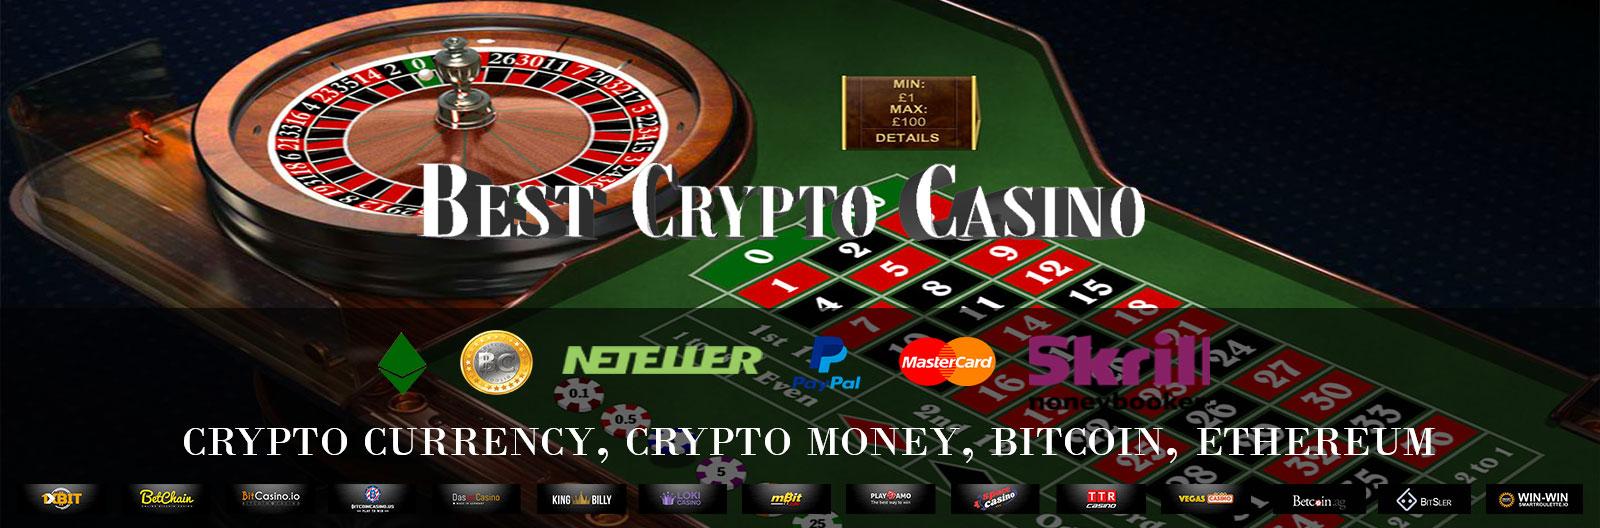 Bitstarz casino mobile